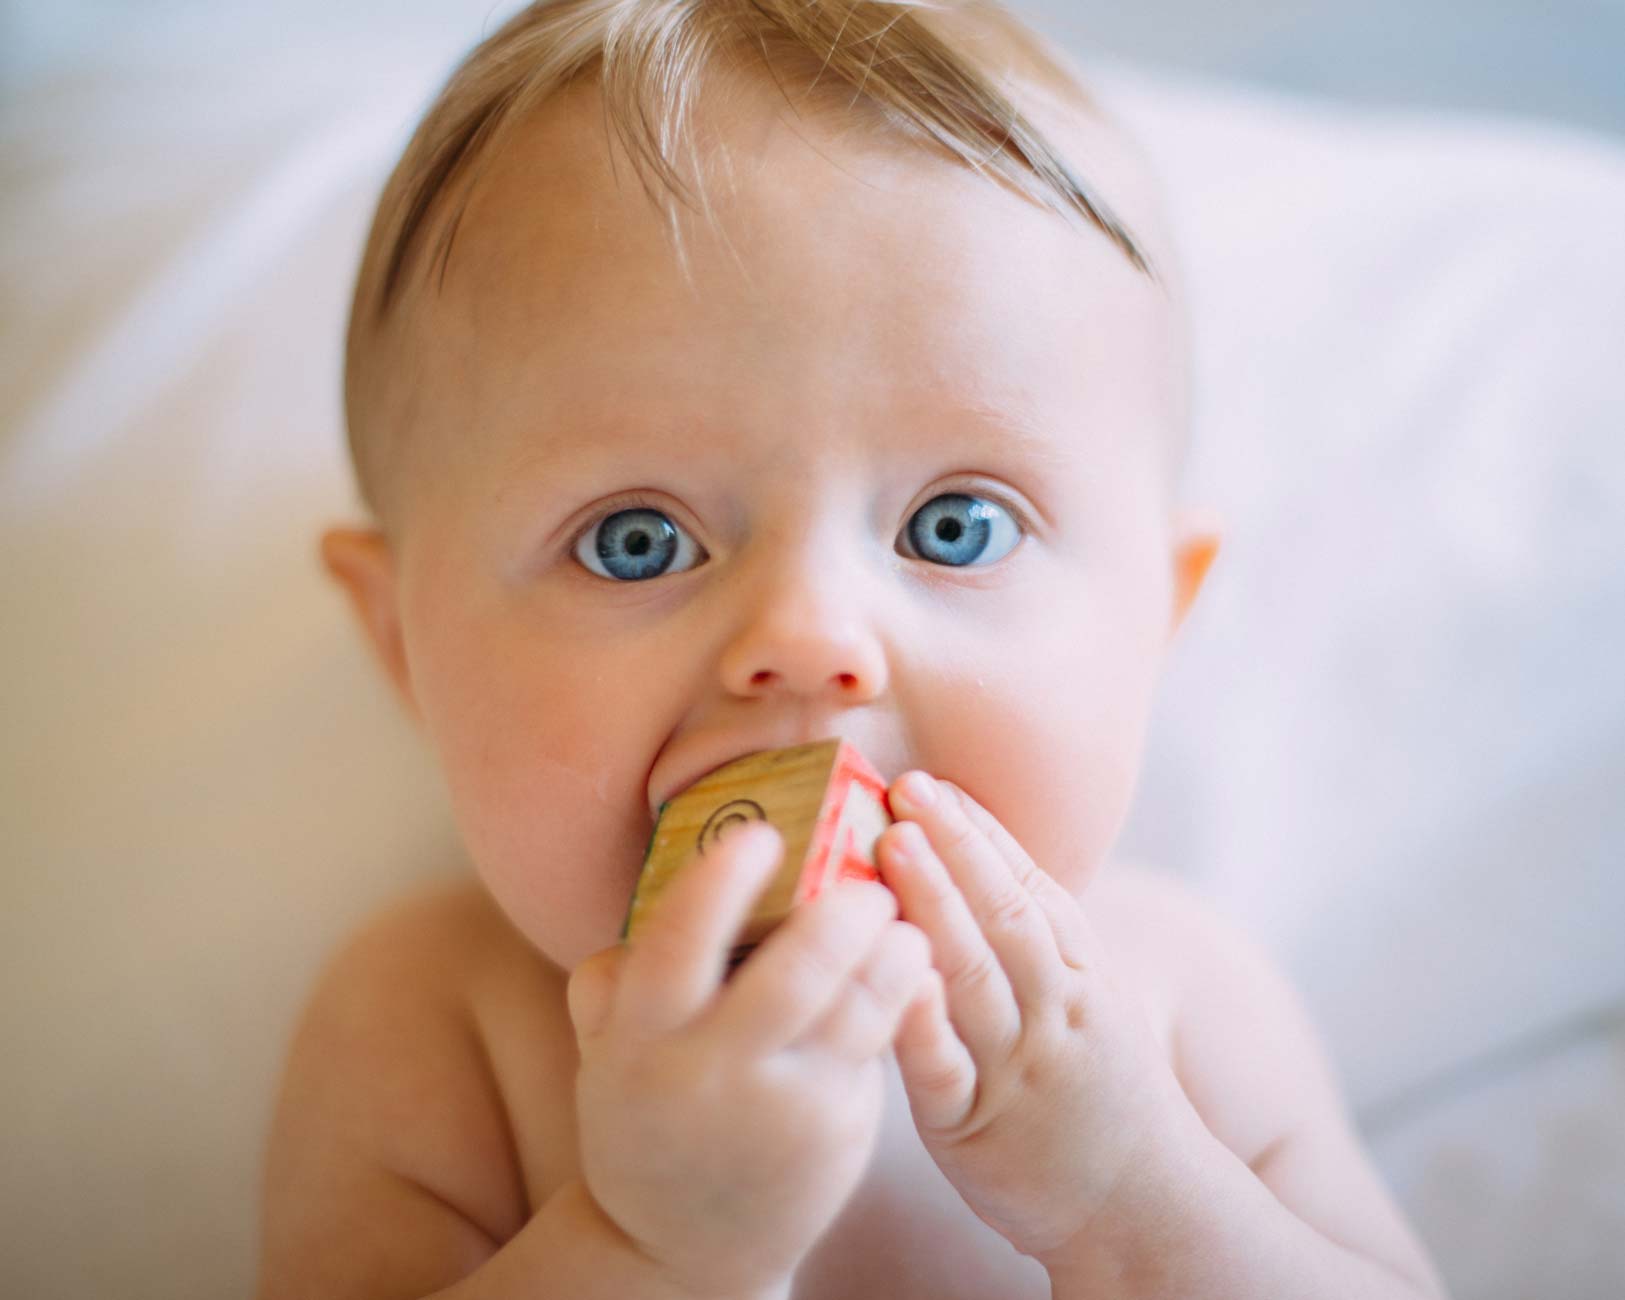 6 Tips for Baby’s Immune Development